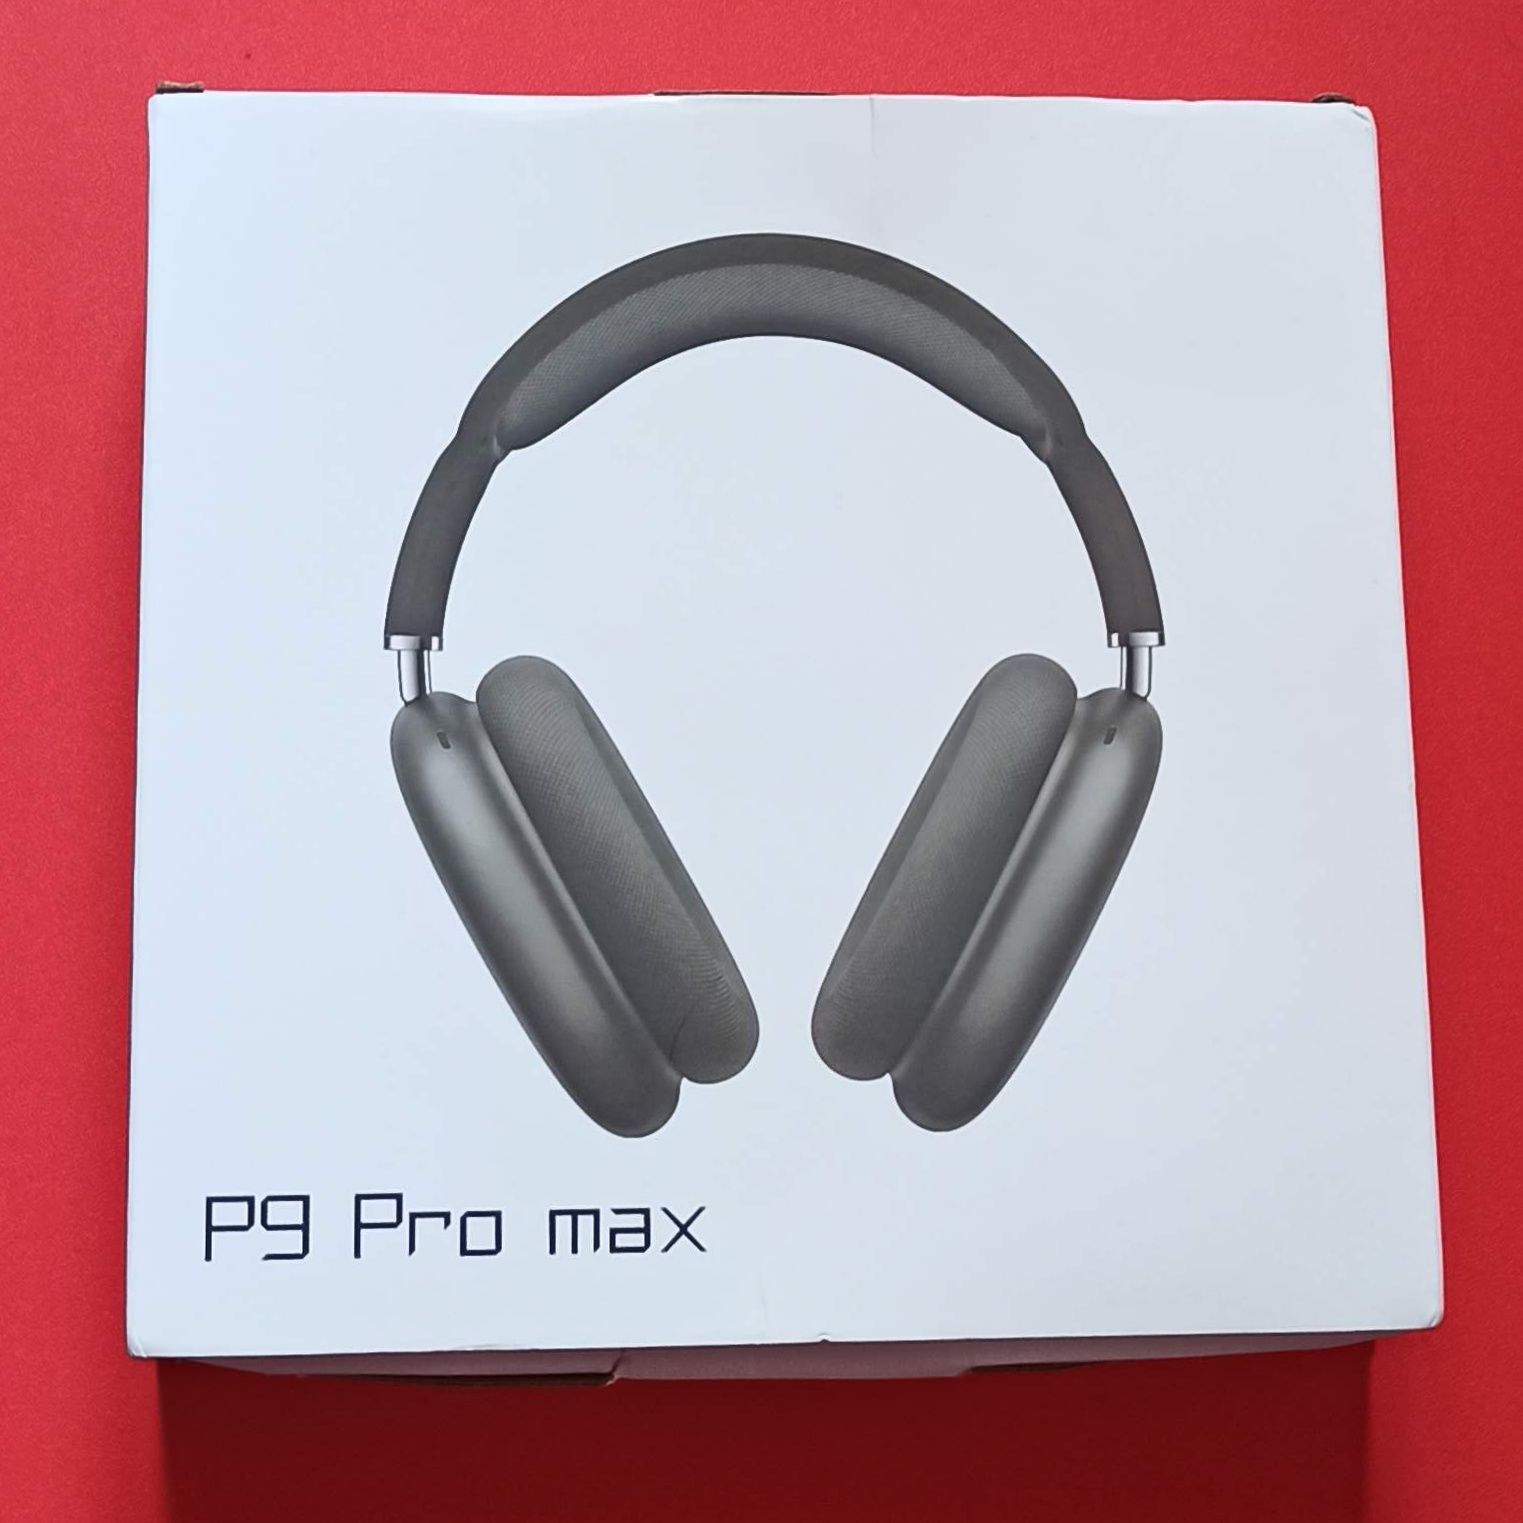 Бездротові накладні навушники P9 Pro max